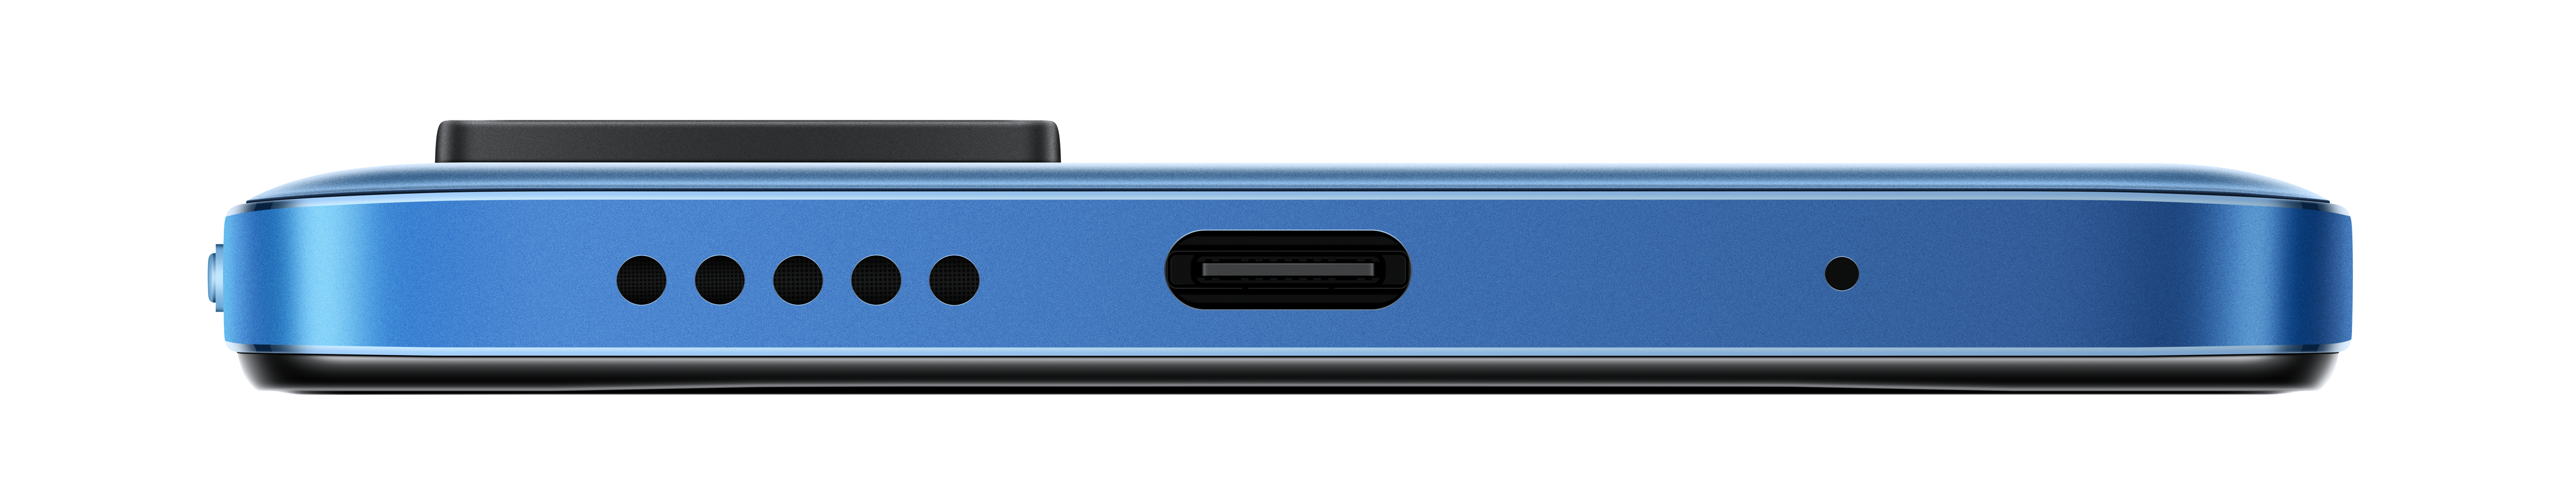 XIAOMI REDMI NOTE 11 Dual 4+64 GB NFC BLUE TWILIGHT SIM 64 Twilight Blue